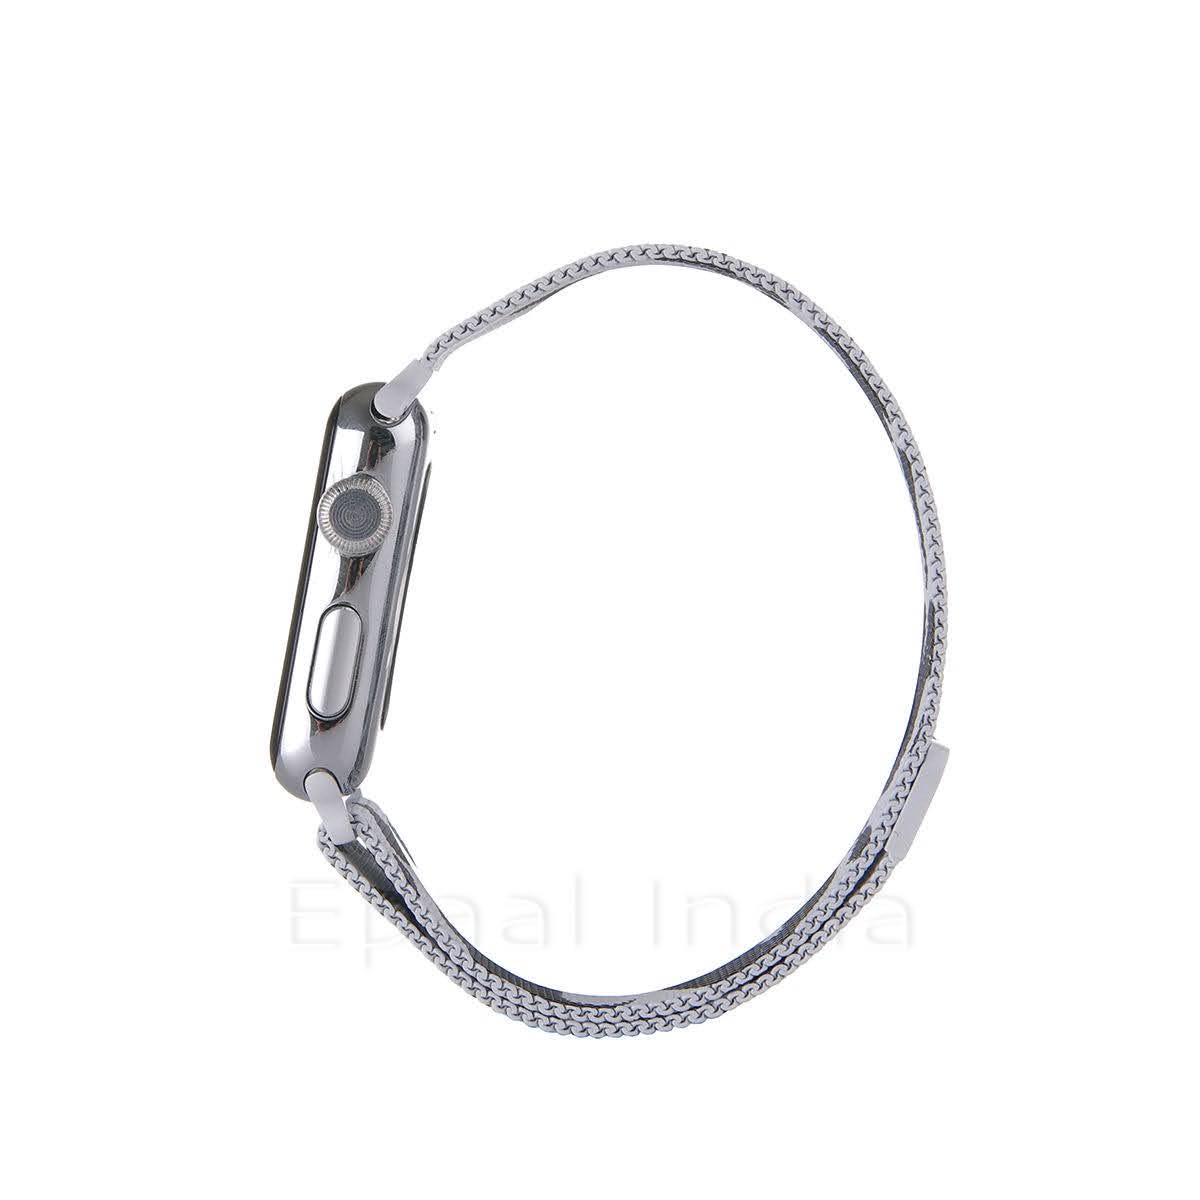 Epaal Apple Watch Series 4/5 Milanese Loop Strap Stainless Steel [42mm / 44mm]